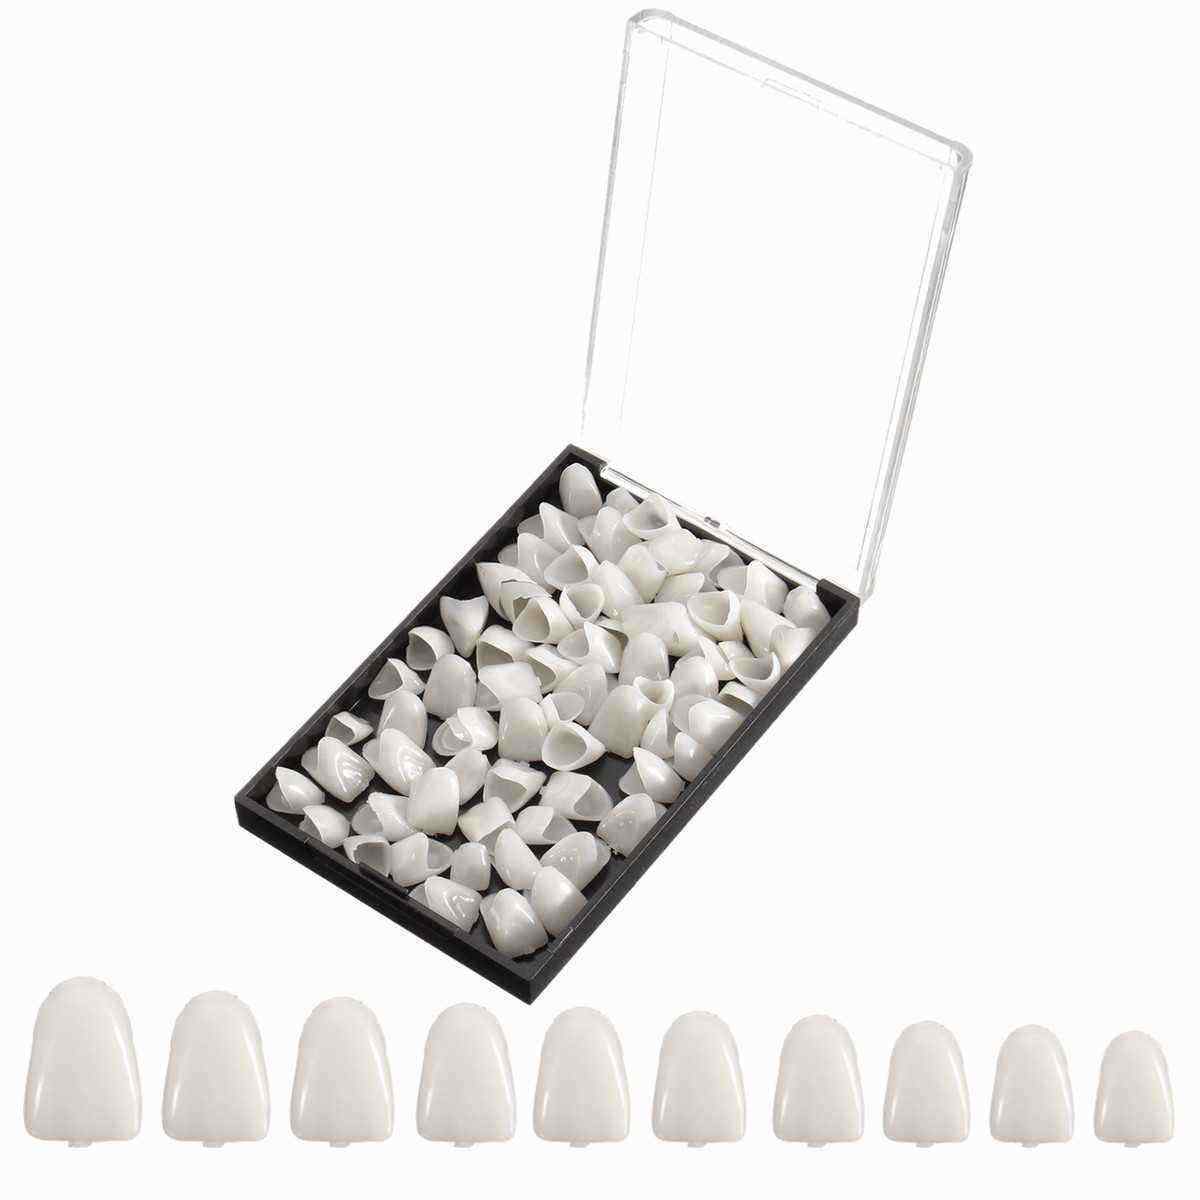 1-Box-Dental-Temporary-Crown-Veneers-Material-for-Anterior-Molar-Teeth-1144018